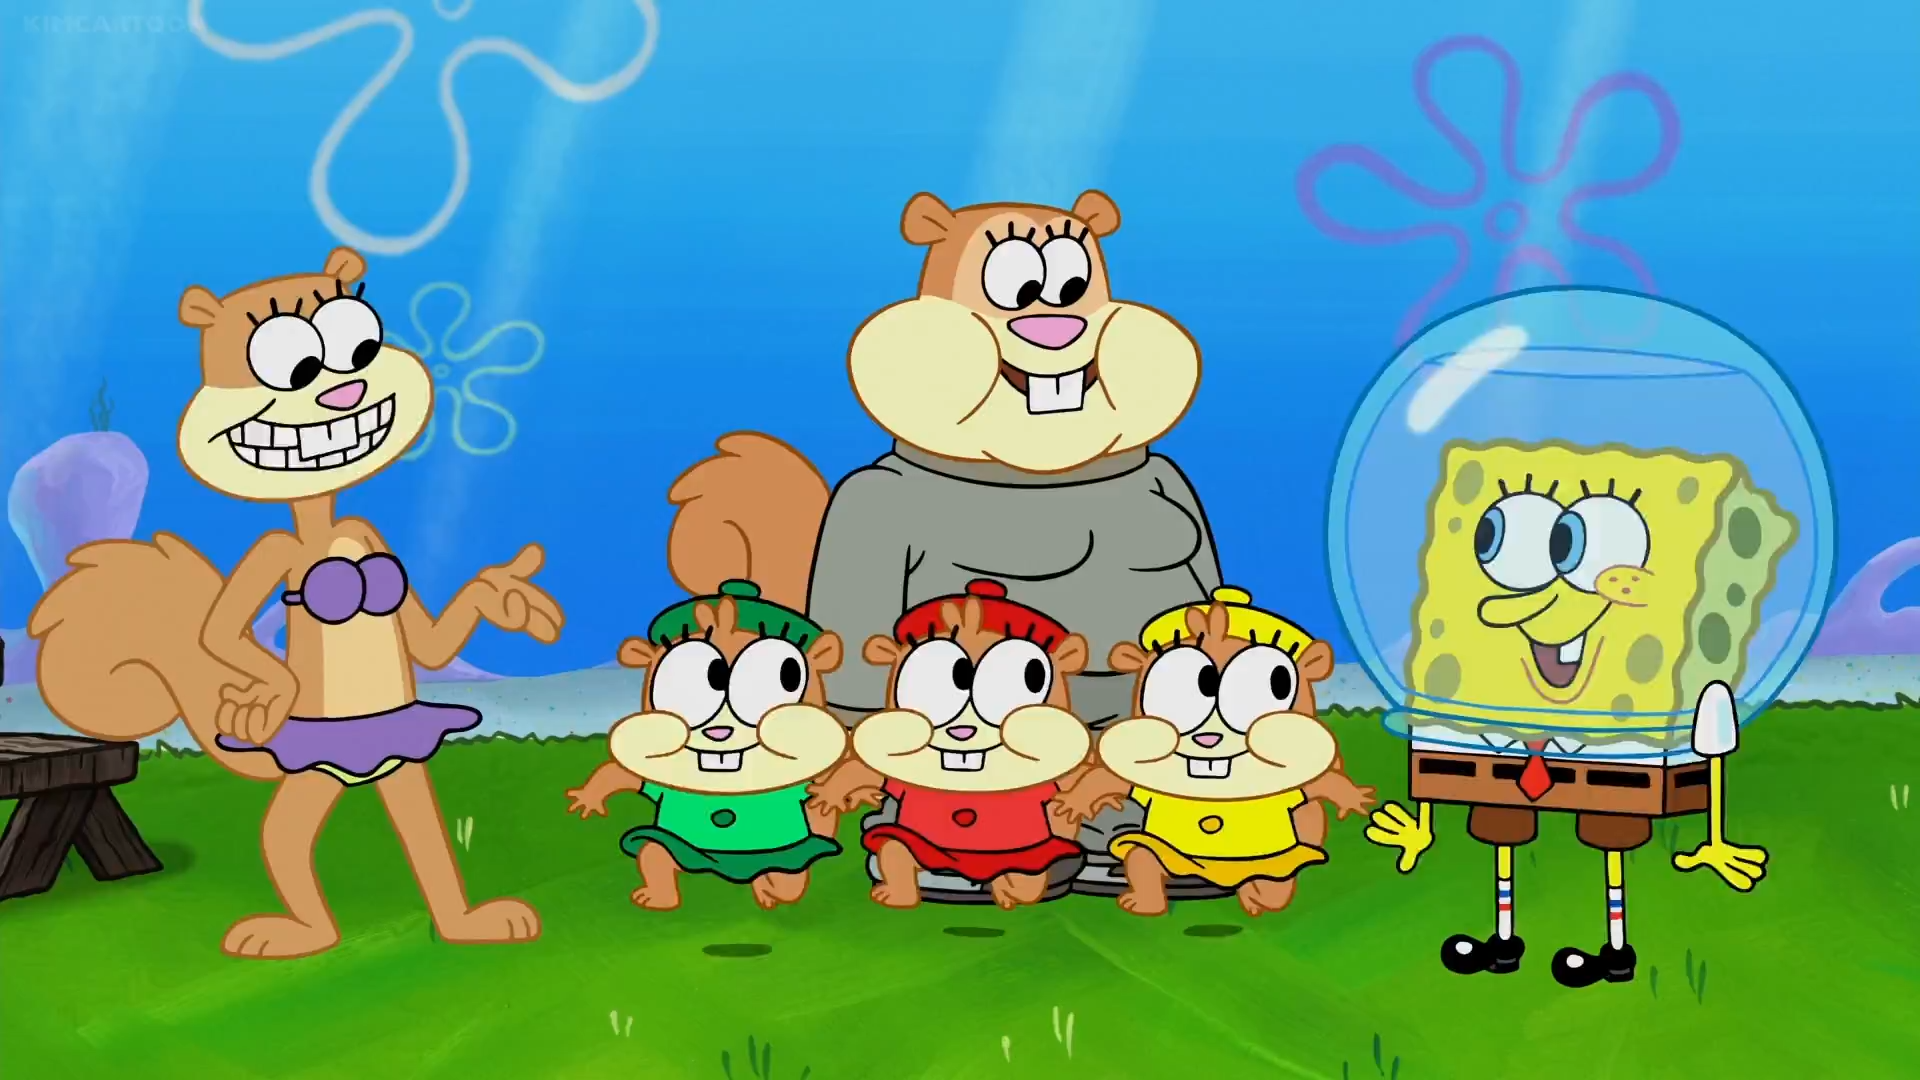 Spongebob sandy. Сэнди чикс. Сэнди из губка Боб квадратные штаны. Губка Боб квадратные штаны Сэнди чикс. Сэнди чикс дети.